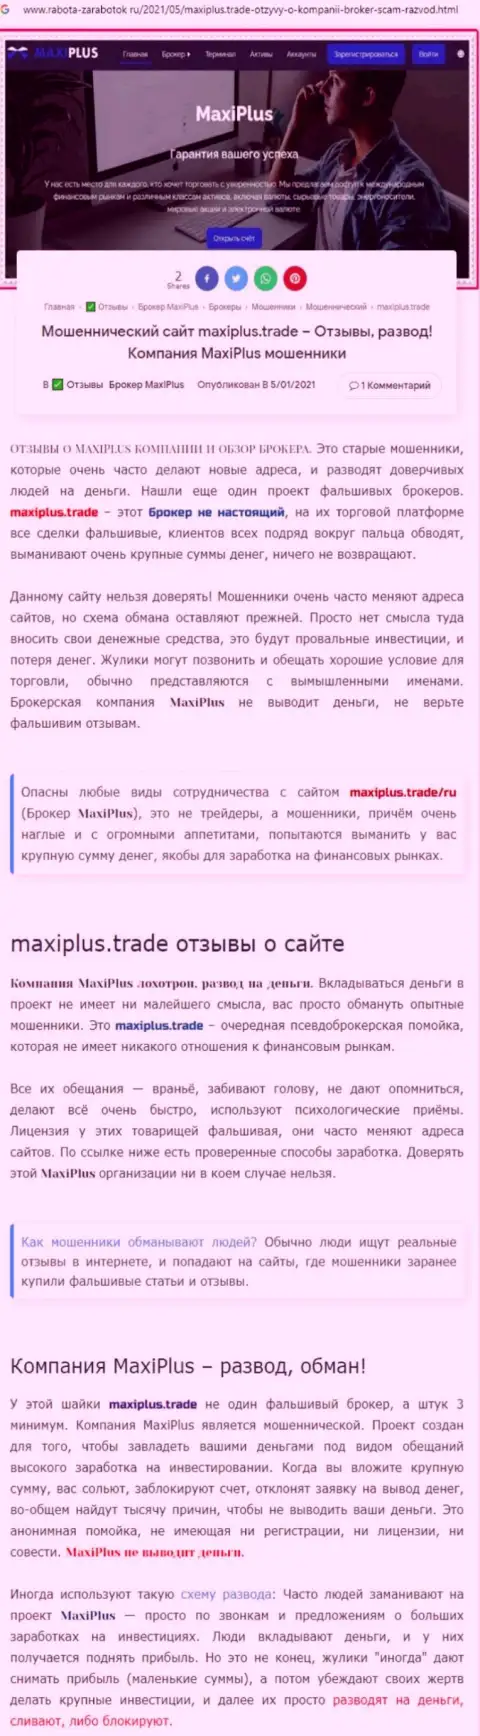 Maxi Plus - ВОРЫ !!! Принцип деятельности РАЗВОДНЯКА (обзор проделок)